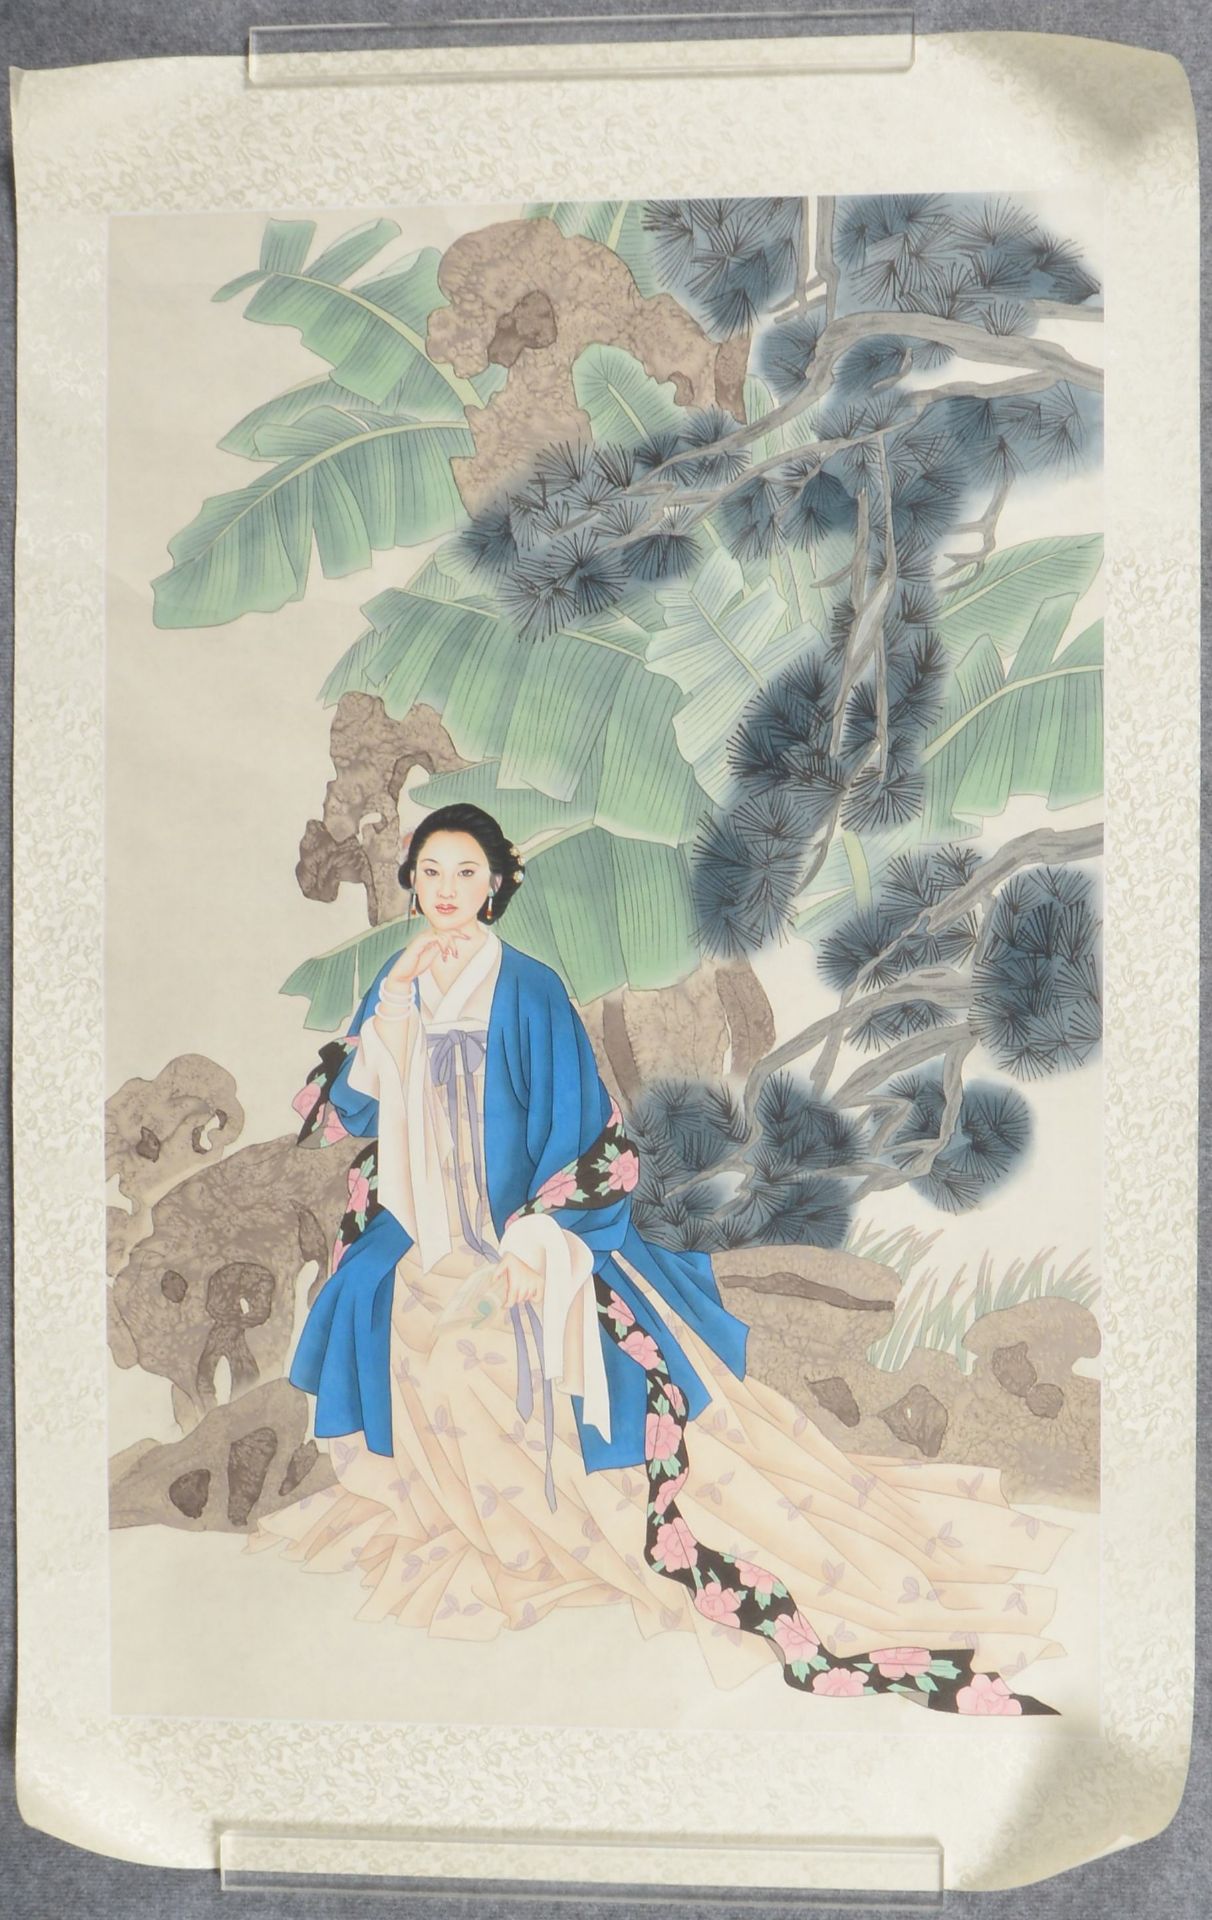 Rollbild (China), 'Frau in Landschaft', im seidenen Passepartout; Maße 115 x 76 cm